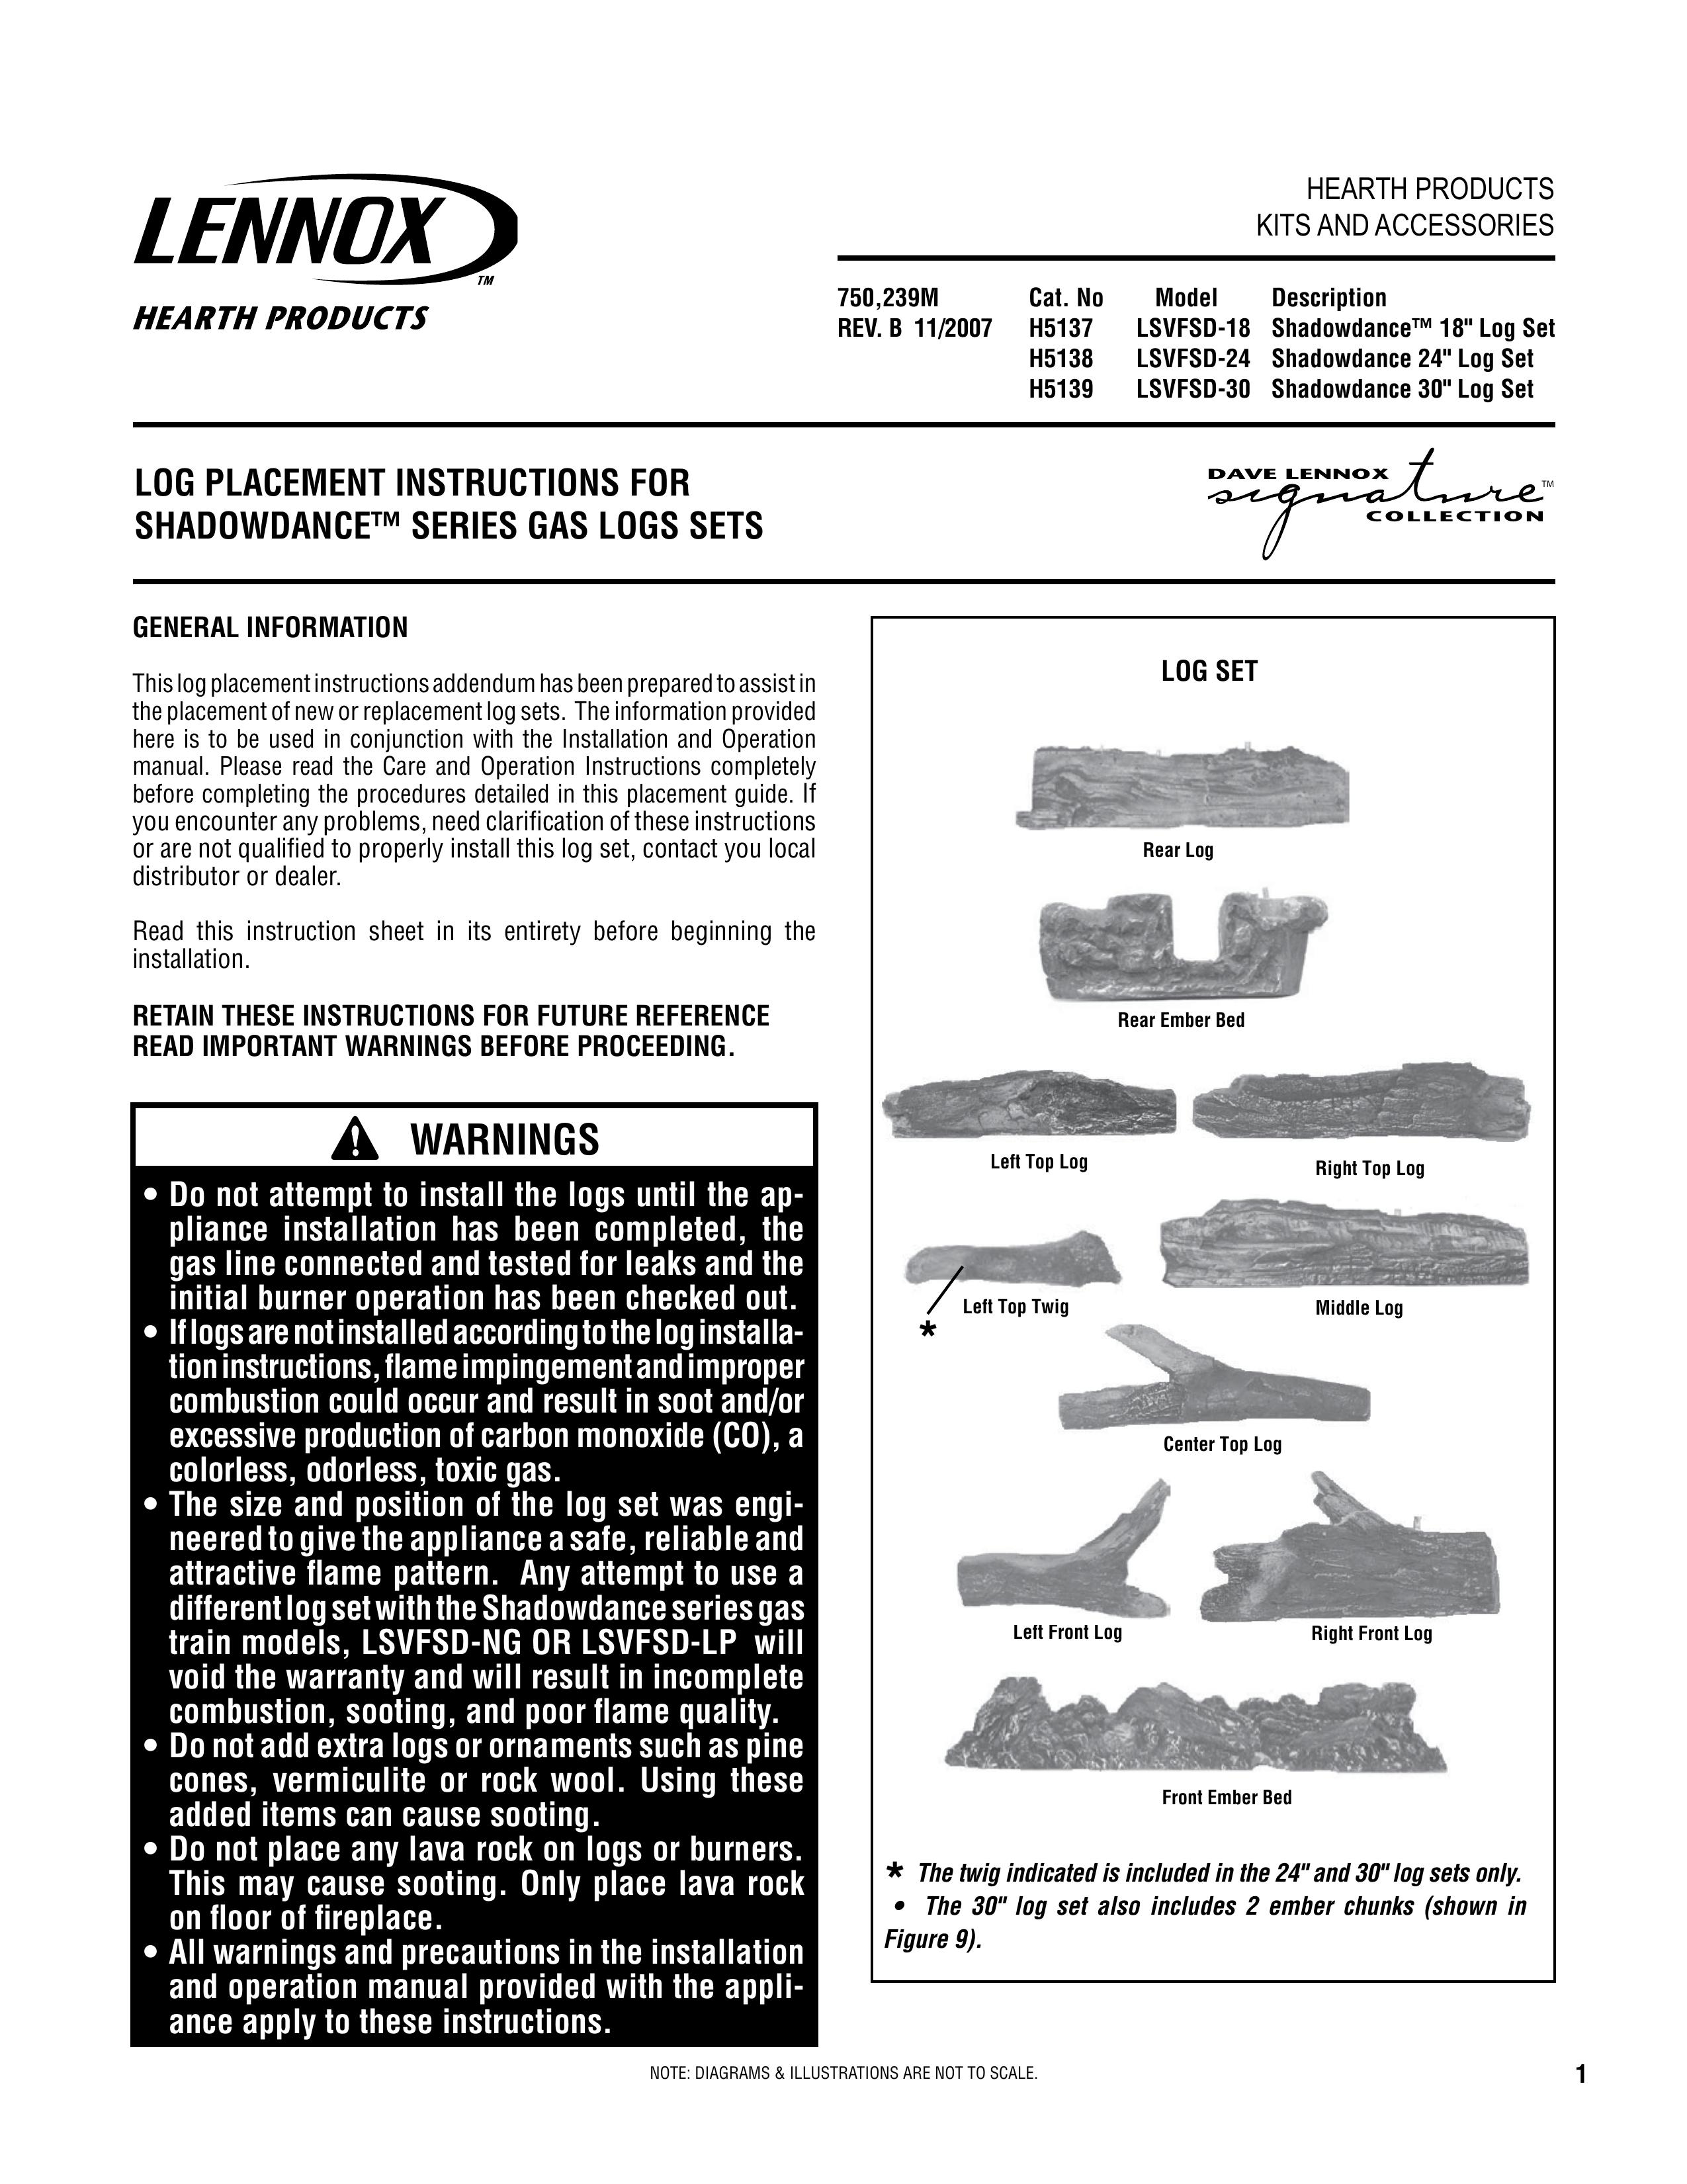 Lennox Hearth LSVFSD-24 Log Splitter User Manual